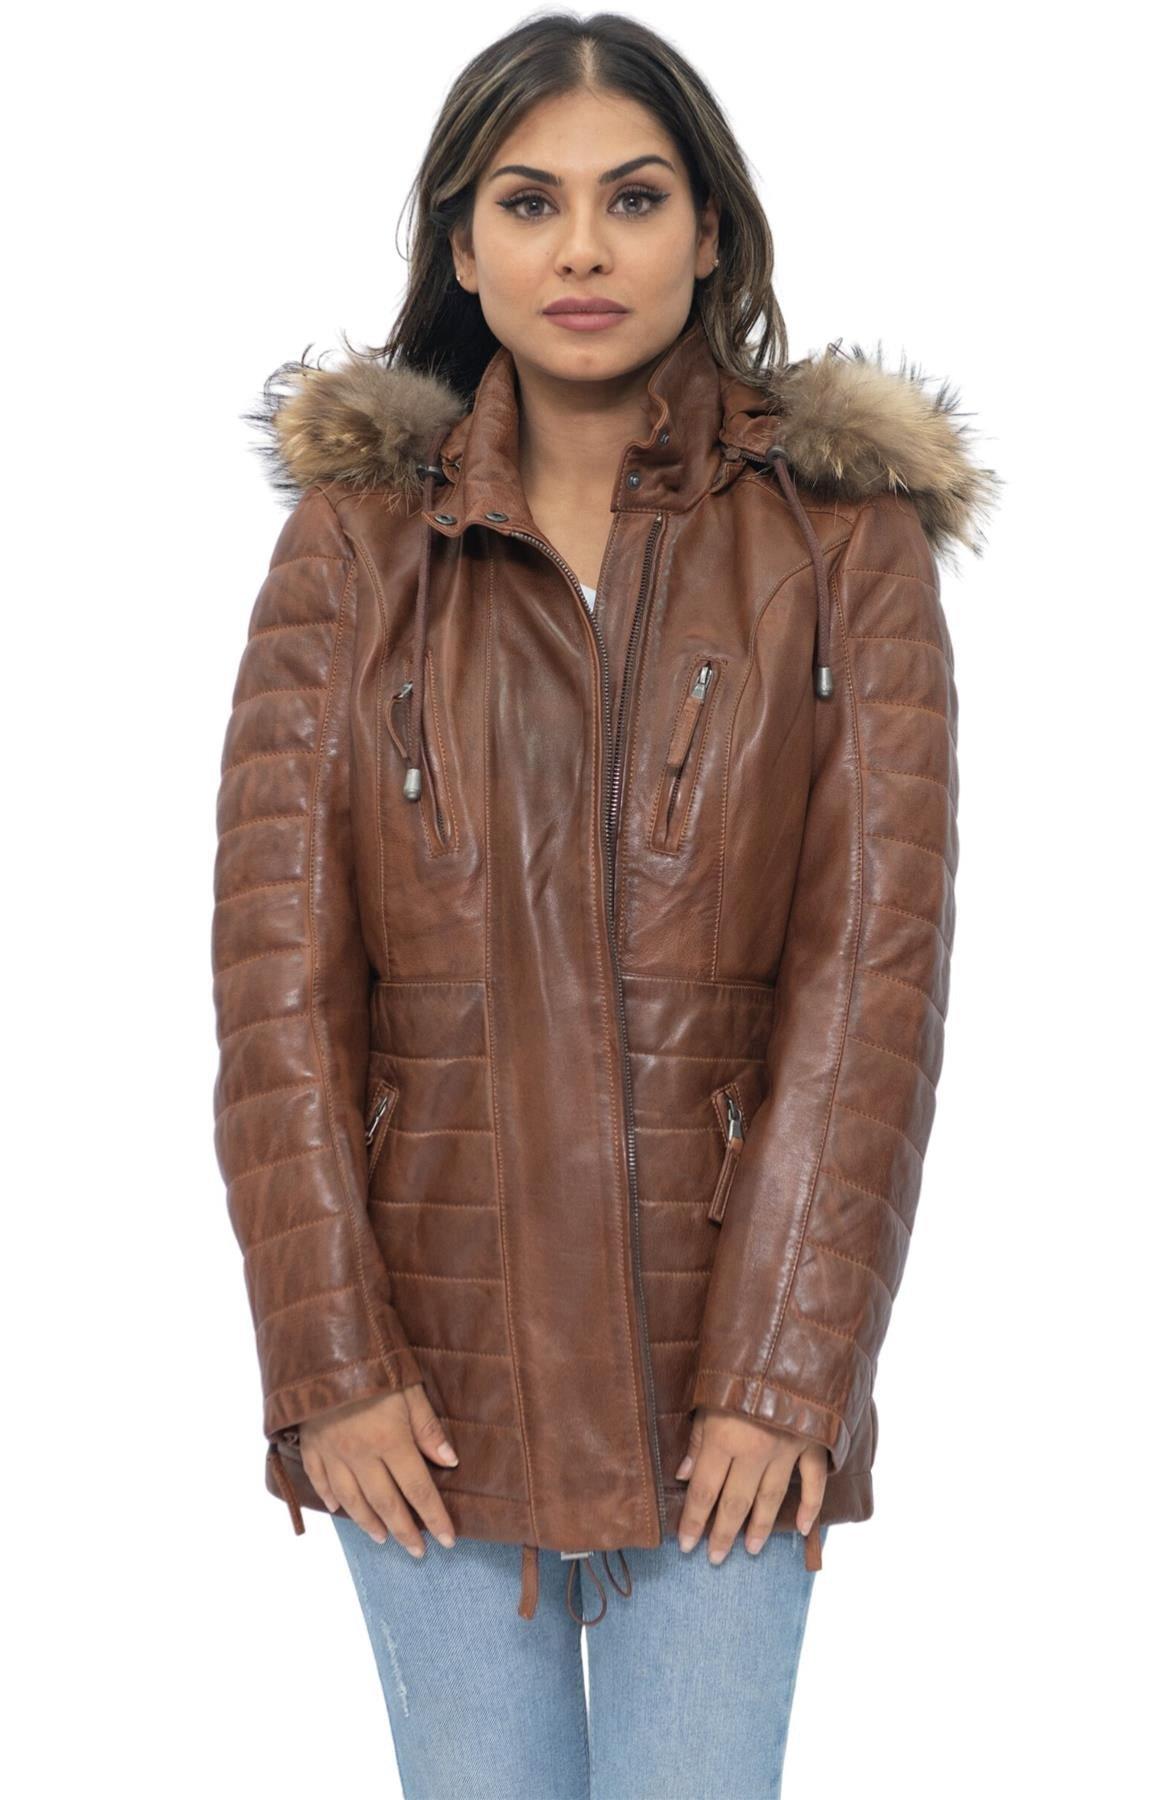 Стеганая кожаная куртка-парка-Куритиба Infinity Leather, коричневый женская куртка на хлопковом наполнителе длинная облегающая парка с меховым воротником и капюшоном зима 2019